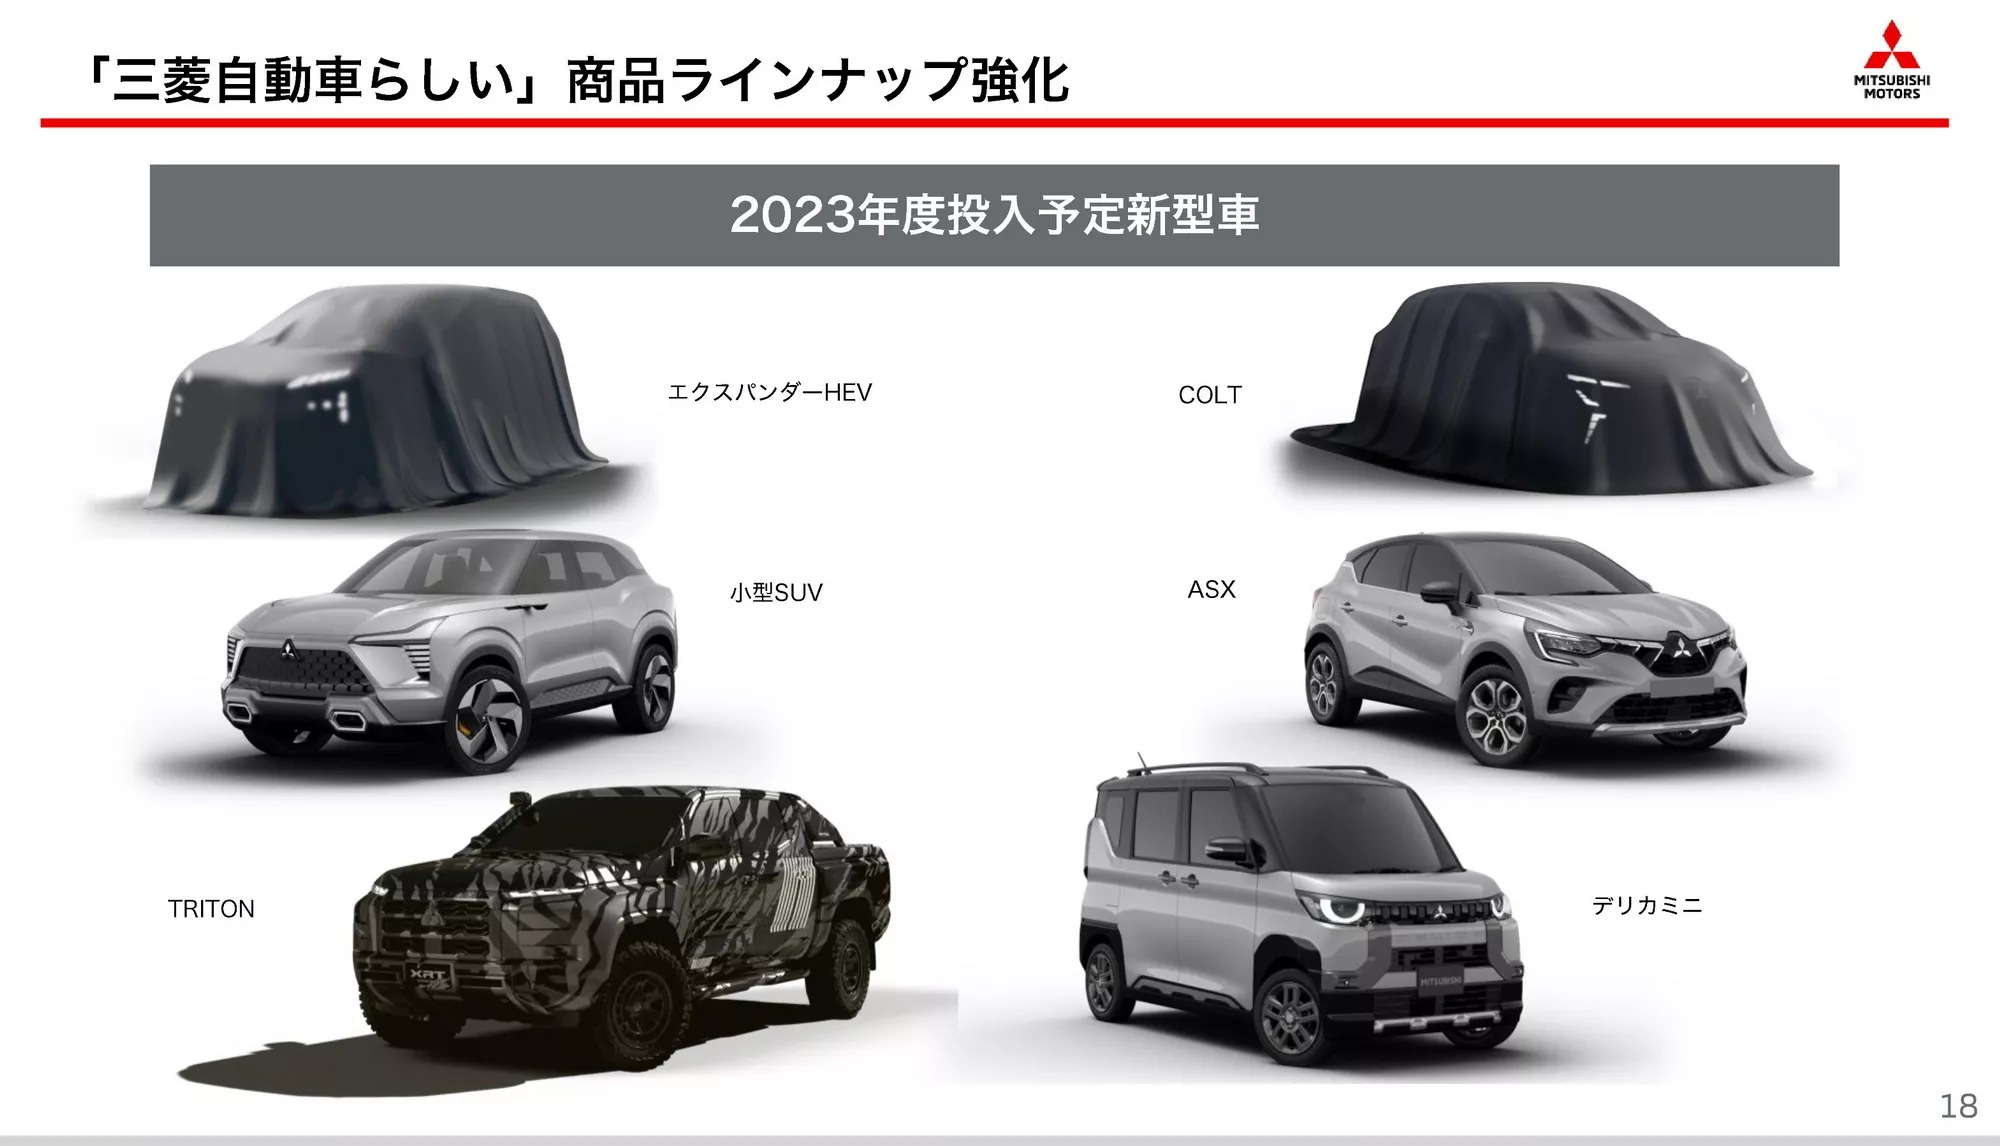 Mitsubishi tung ảnh 6 xe mới ra mắt năm nay: Có Xpander Hybrid, XFC và nhiều xe đáng mong chờ tại Việt Nam - Ảnh 1.